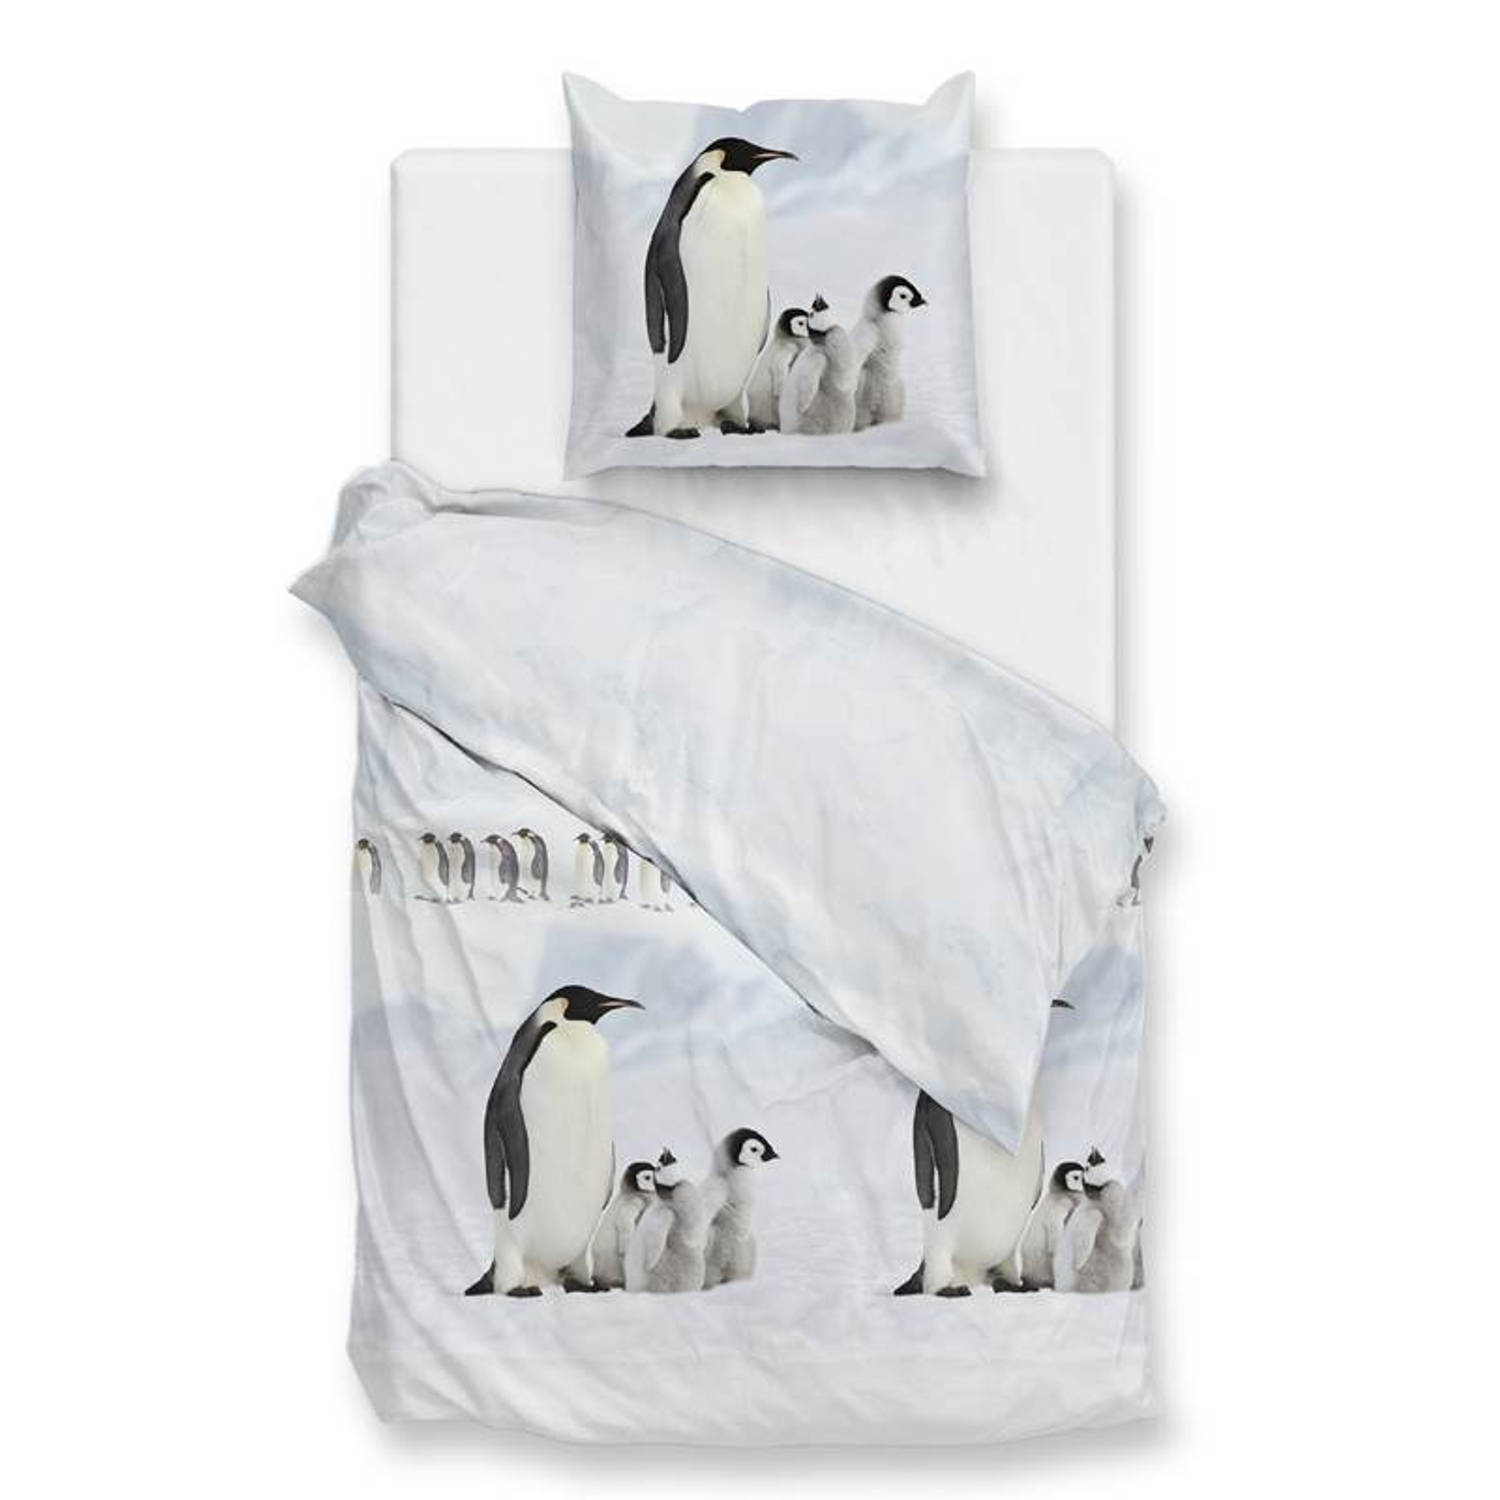 ZoHome White dekbedovertrek Pingu 140x220, gemaakt van 100% Polyester